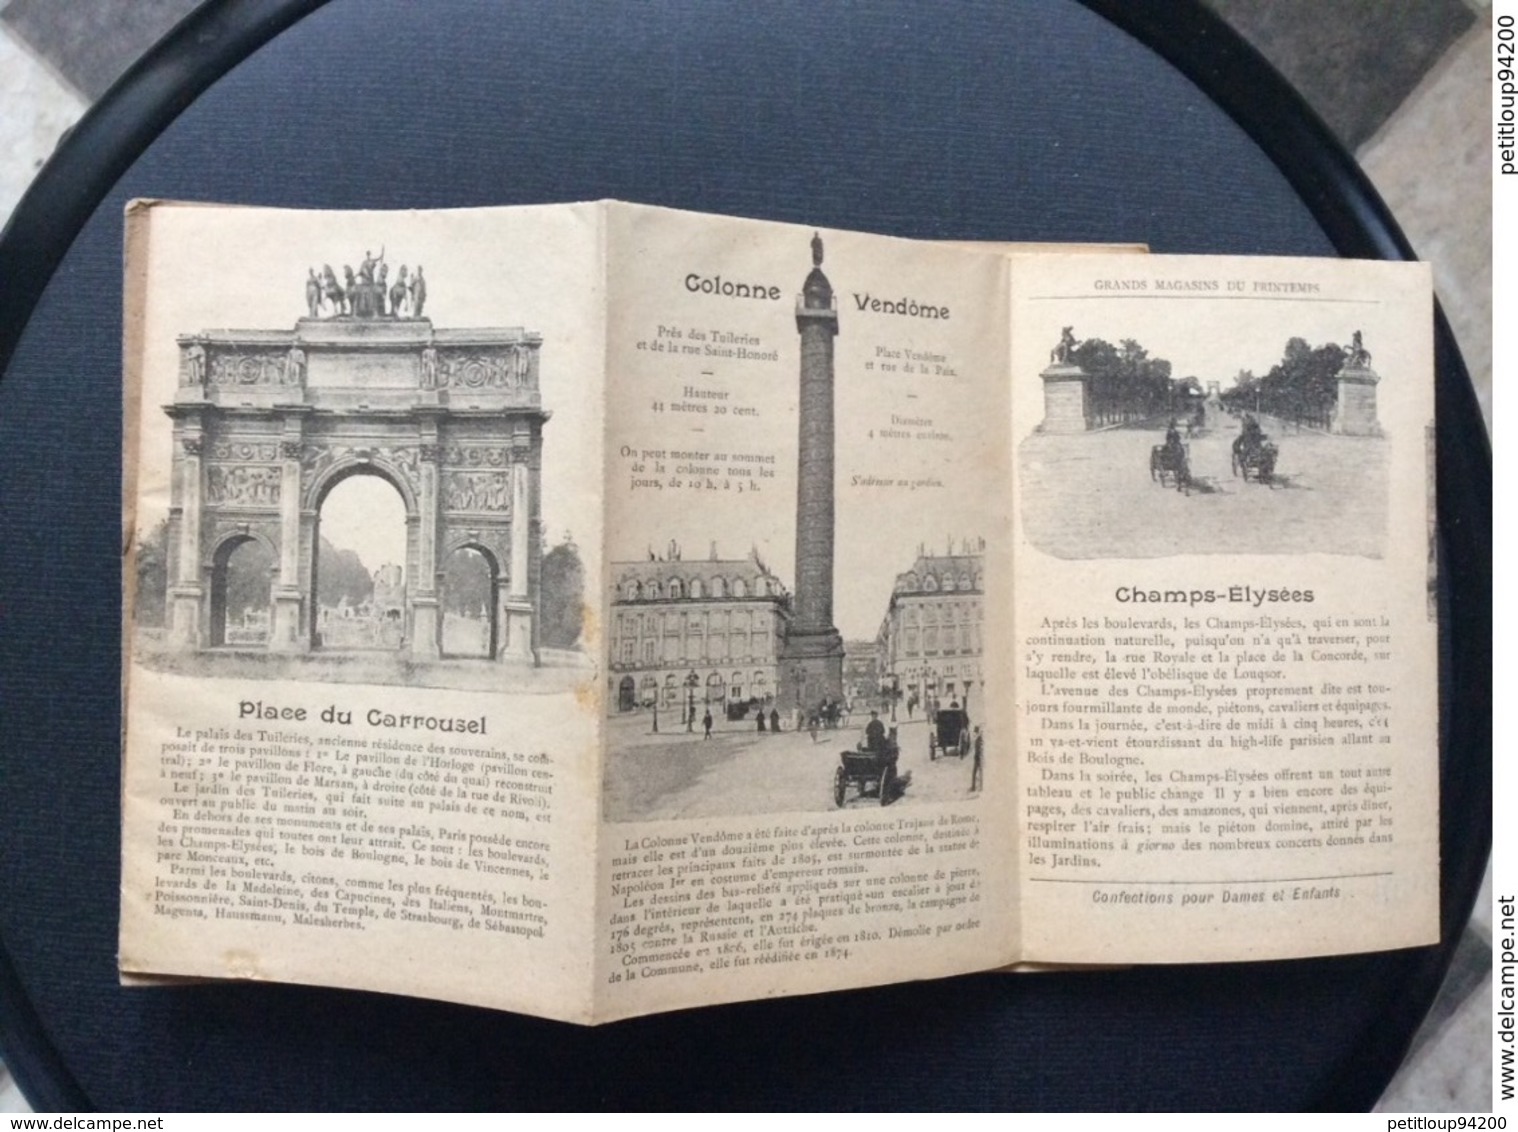 PLAN & GUIDE Offert Par les Grands Magasins du PRINTEMPS Paris  EXPOSITION UNIVERSELLE 1900  Jules Jaluzot & Cie